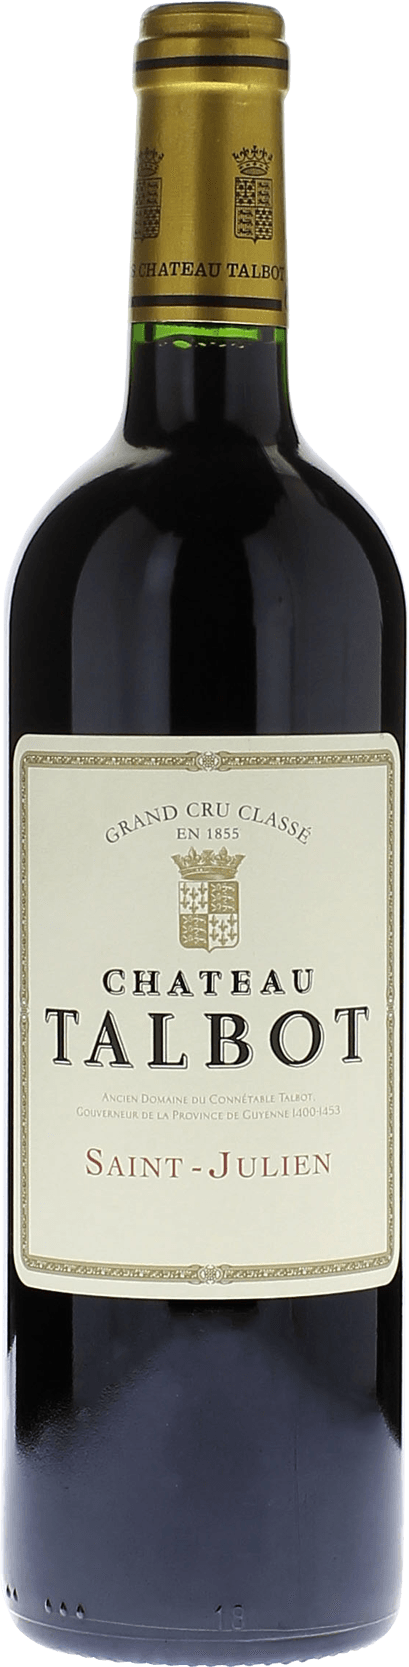 Talbot 2008 4me Grand cru class Saint-Julien, Bordeaux rouge